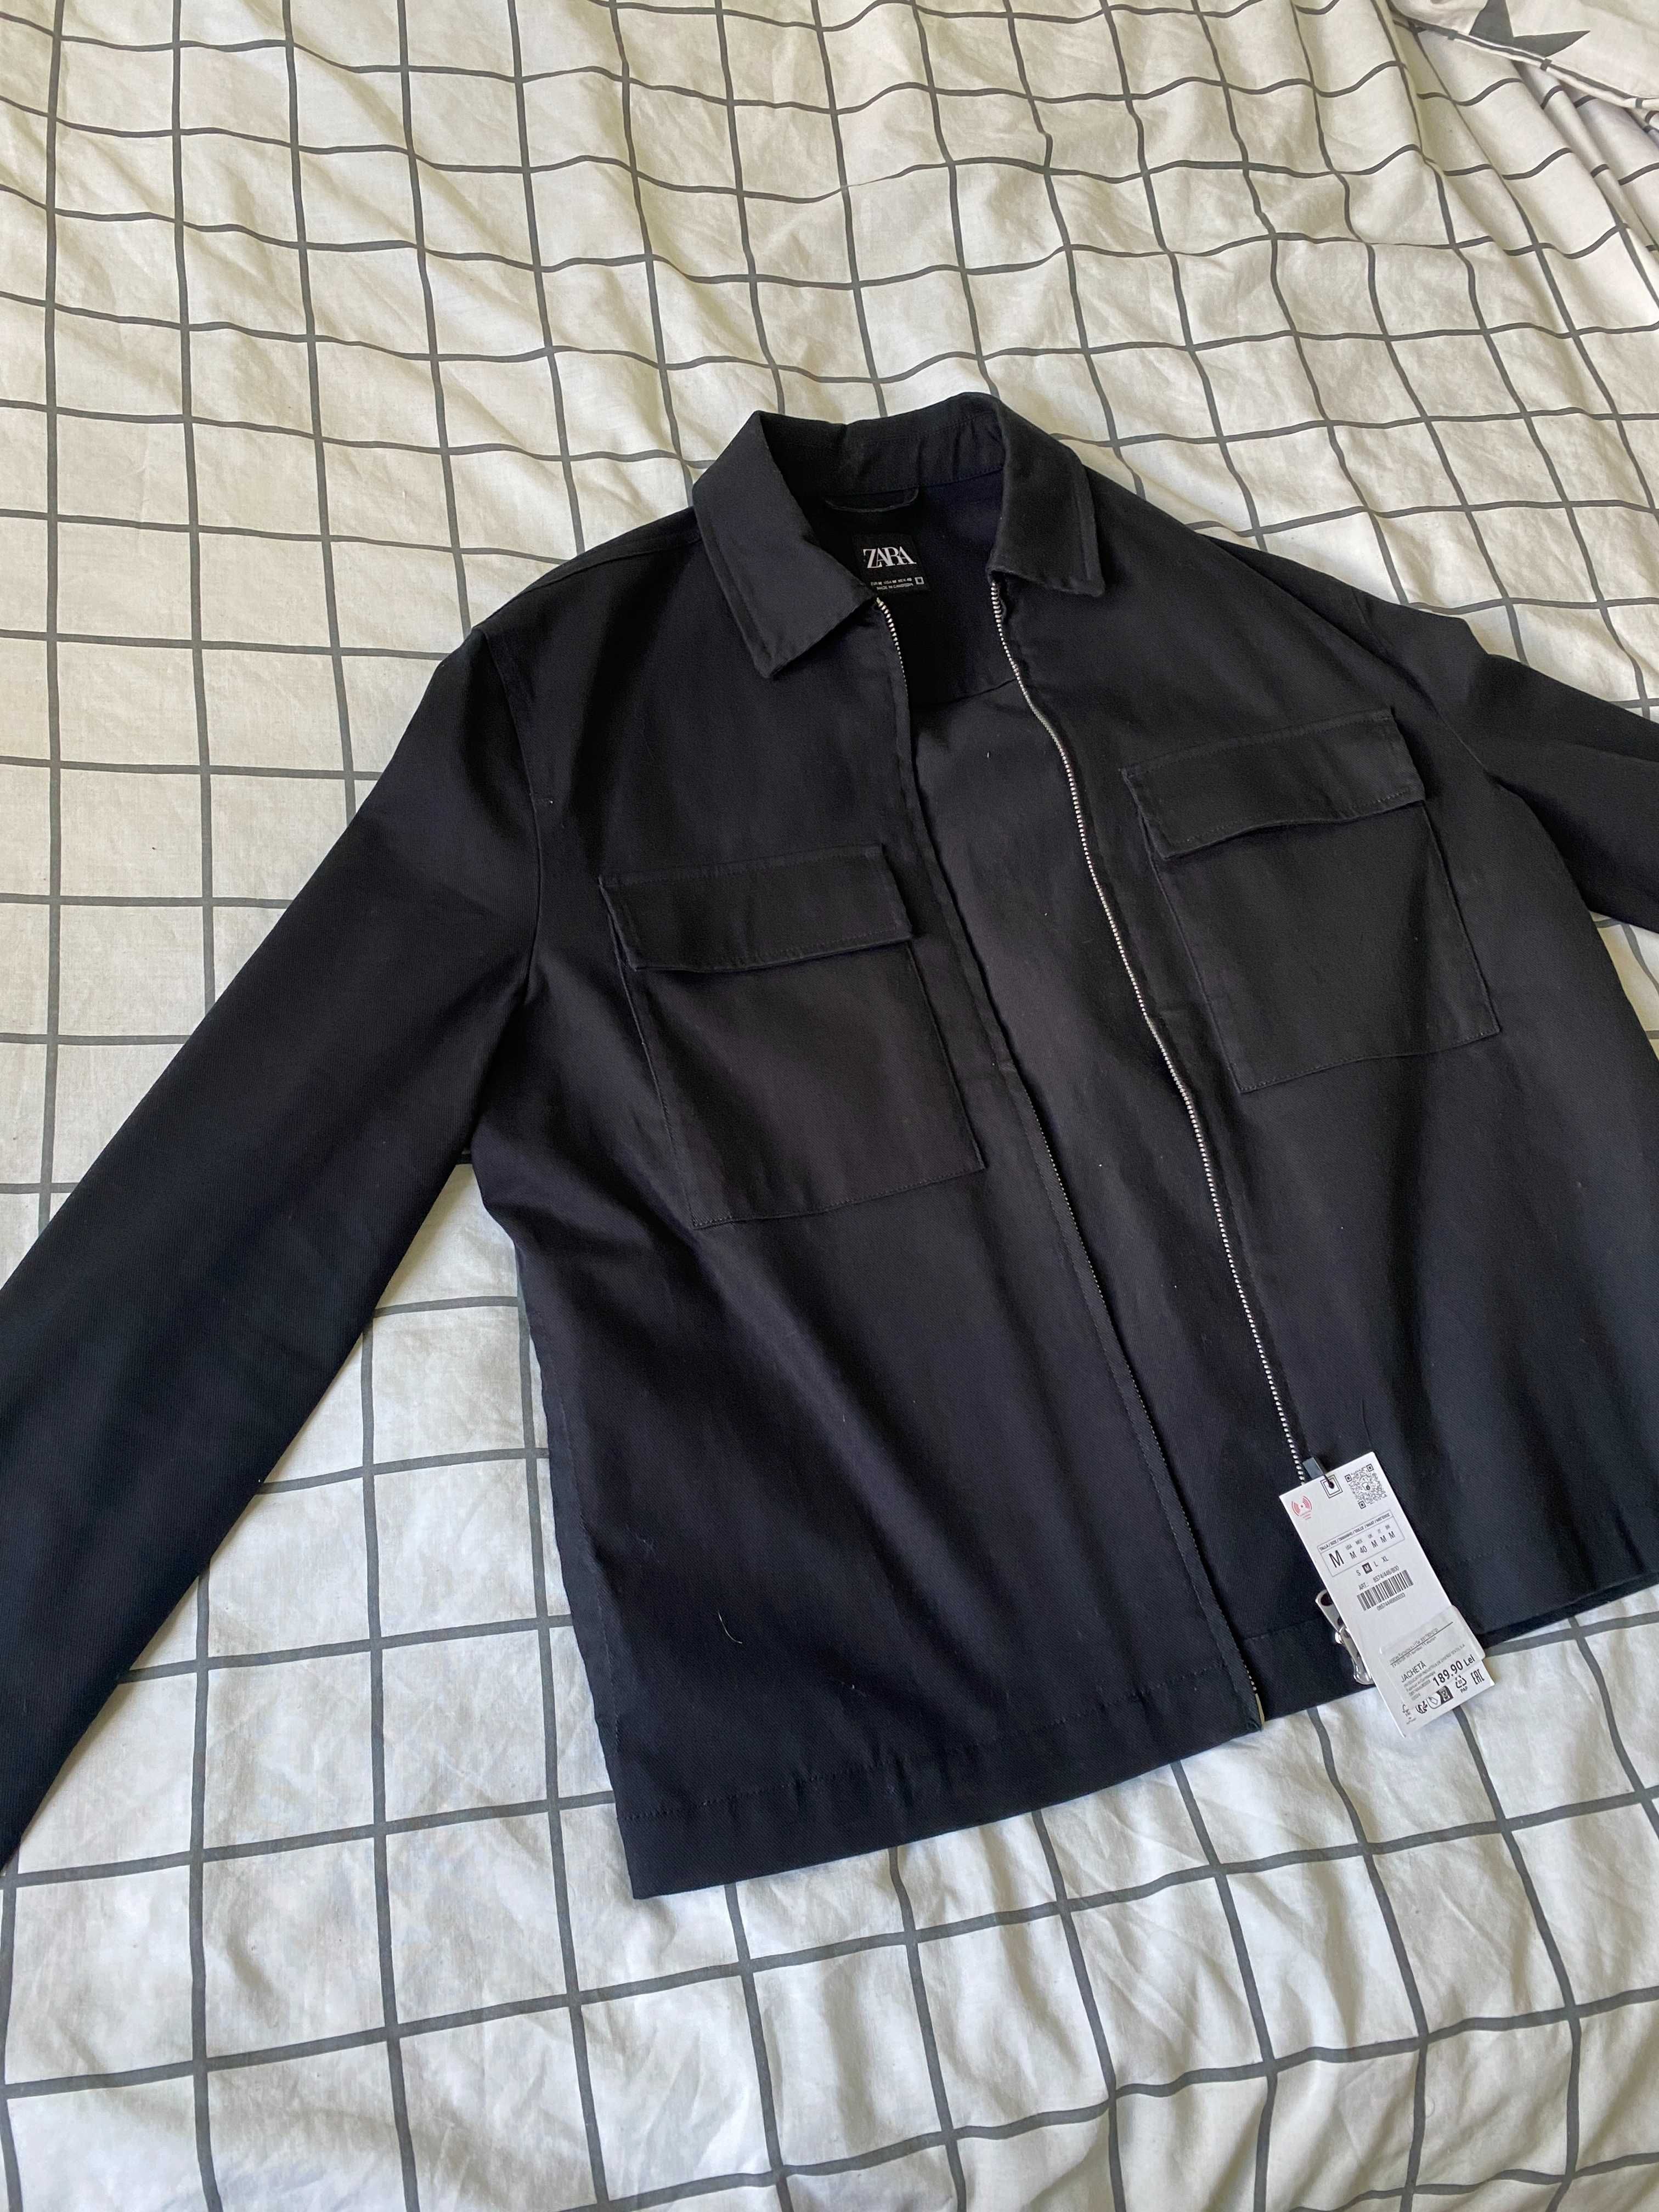 Верхня сорочка Zara з кишенями. Чорного кольору. М розмір